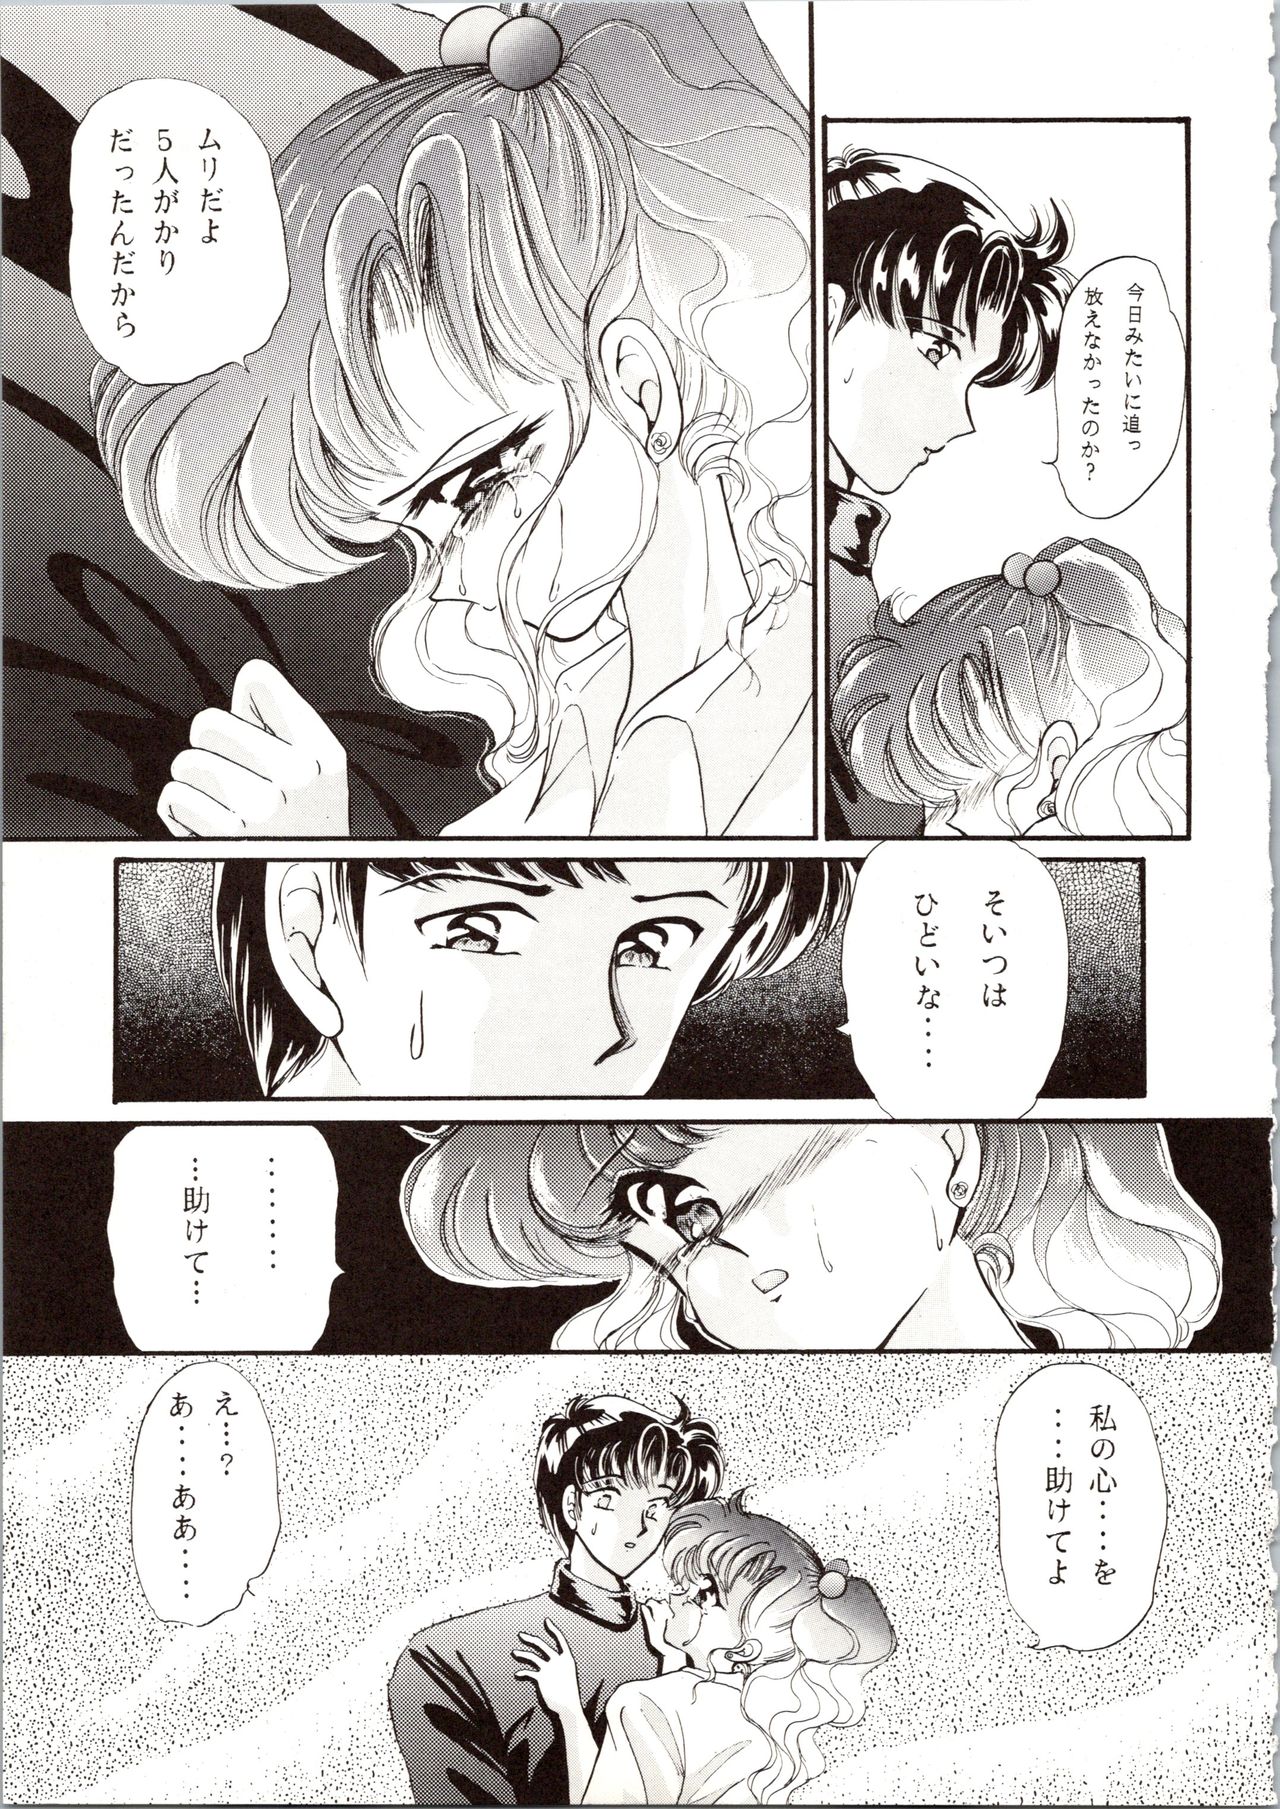 [P.P.P.P.C, TRAP (Matsuzaka Reia, Urano Mami)] Kangethu Hien Vol. 6 (Bishoujo Senshi Sailor Moon) page 47 full